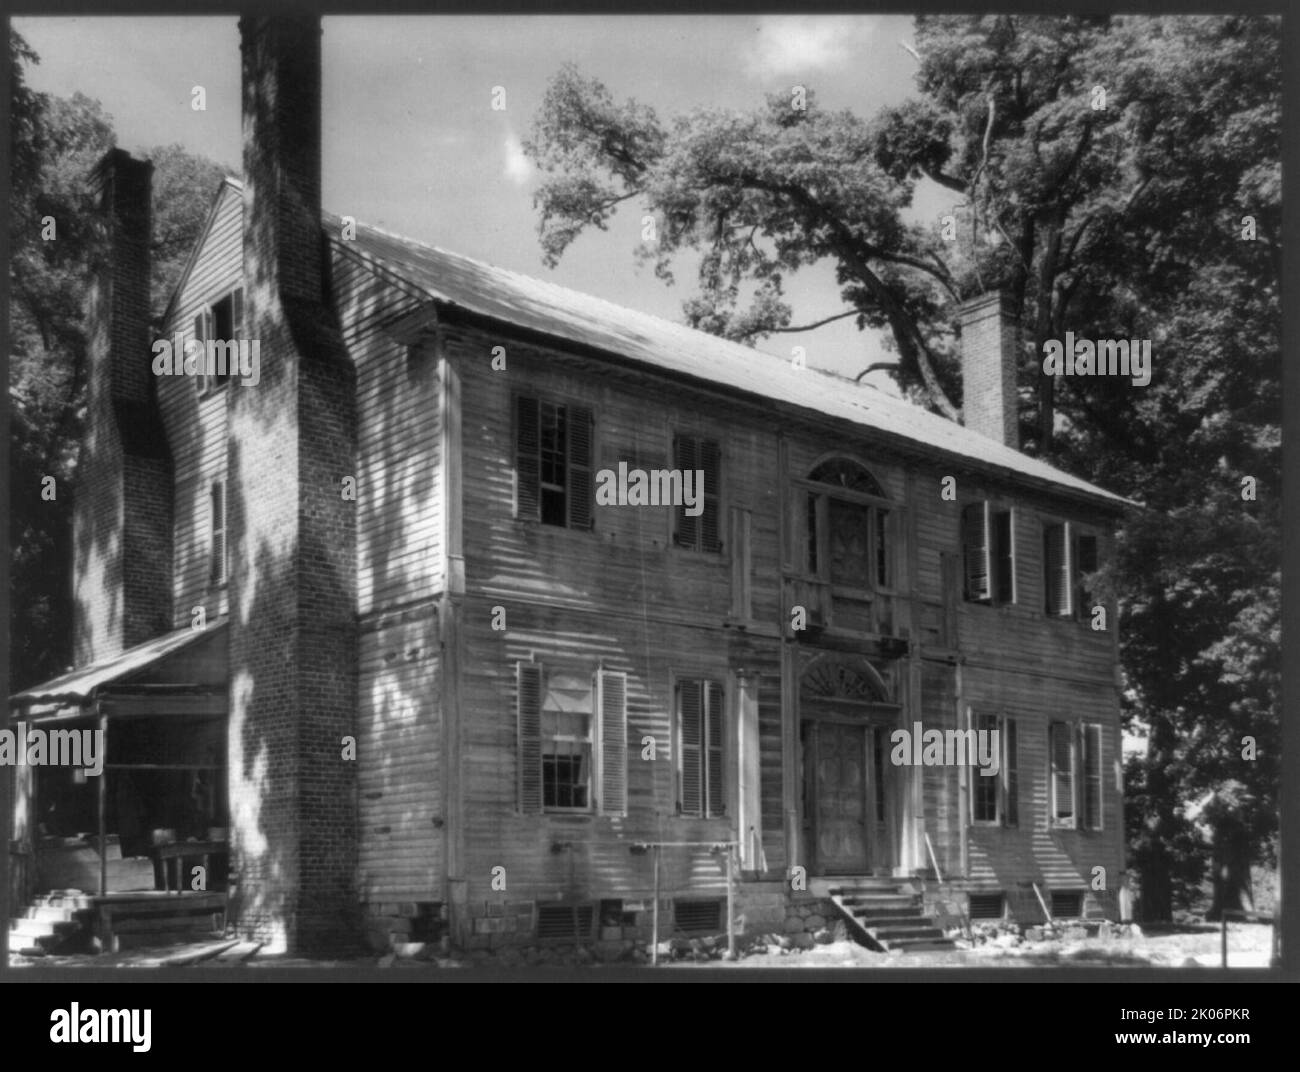 Burnside, Hunt-Hamilton House, zeigt Tidewater-Details, vor dem Umbau, Williamsboro, Vance County, North Carolina, c1935. (Der Tidewater-Stil der Architektur findet sich vor allem in Küstengebieten der südlichen Vereinigten Staaten). Stockfoto